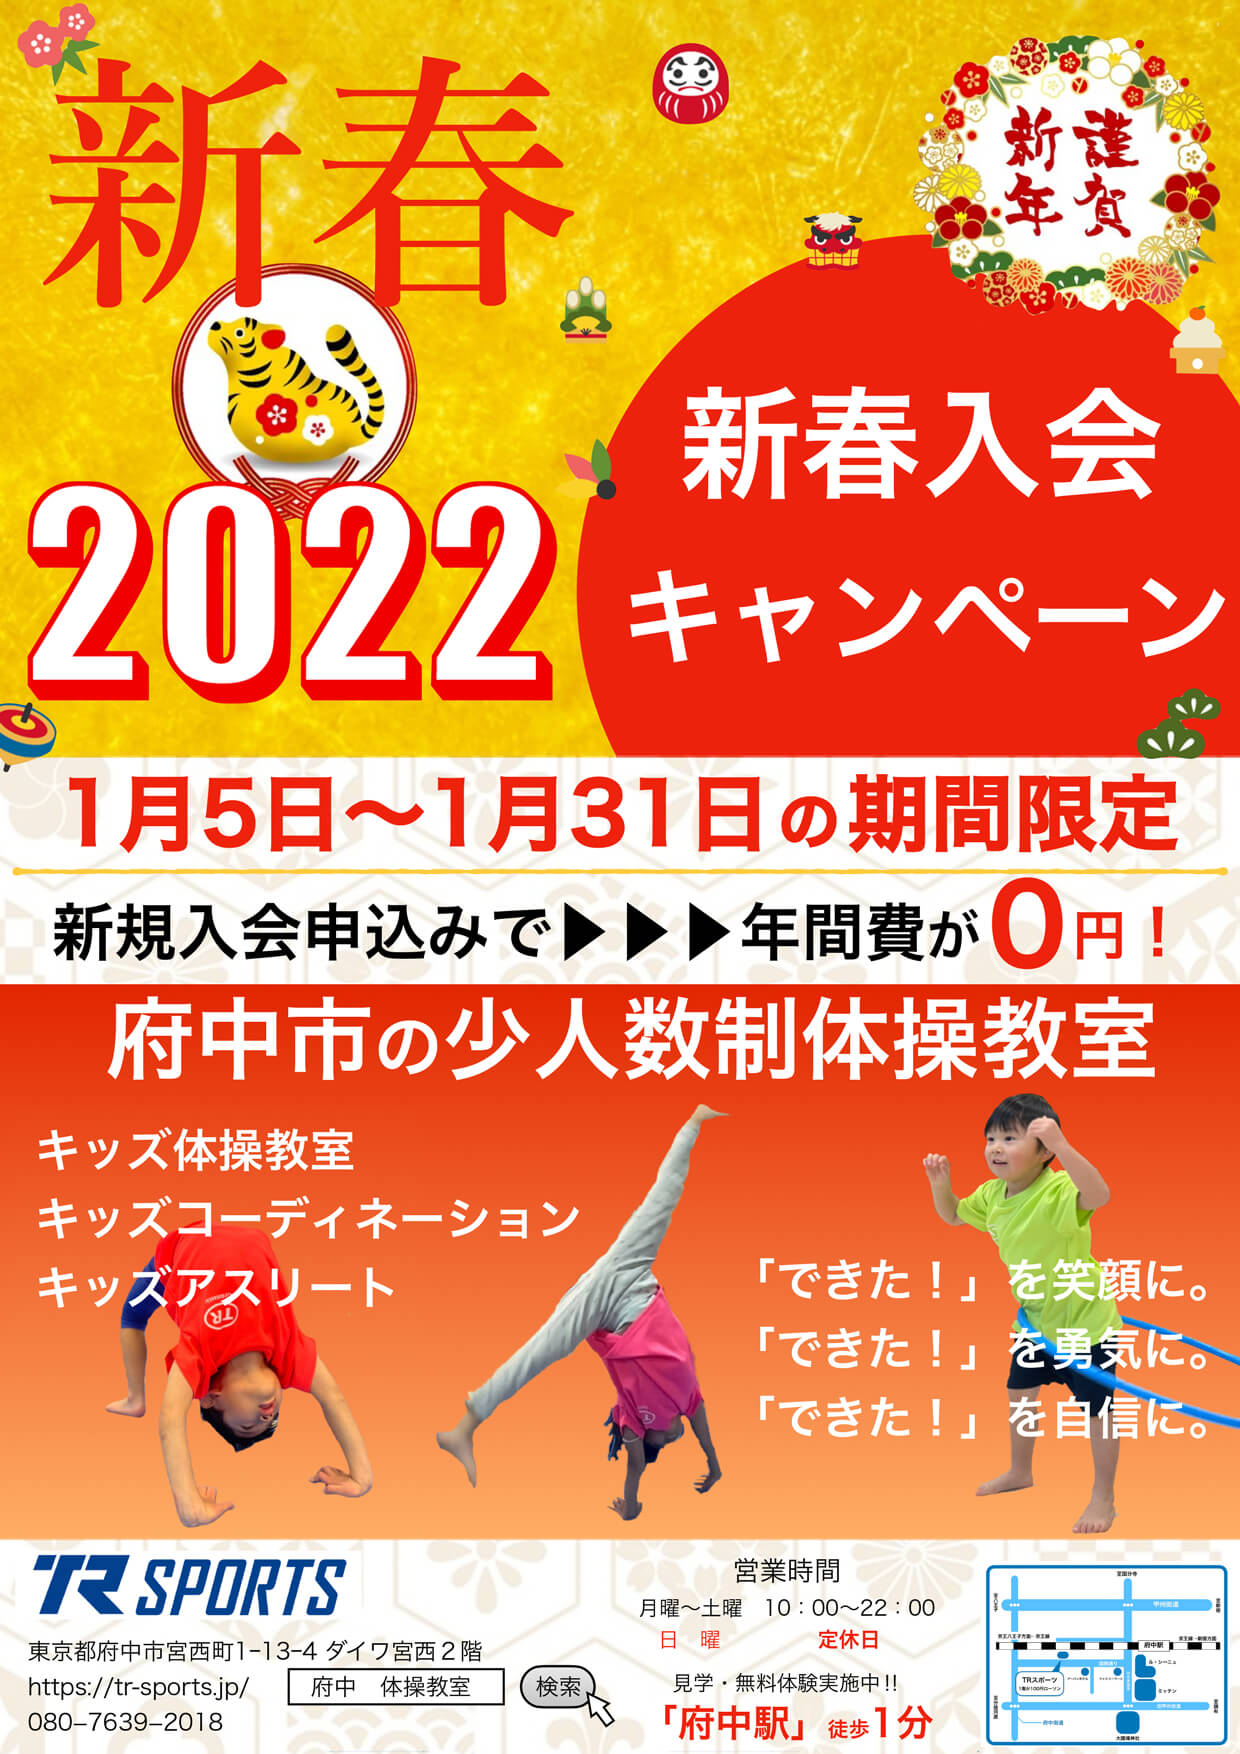 2022 新春入会キャンペーン